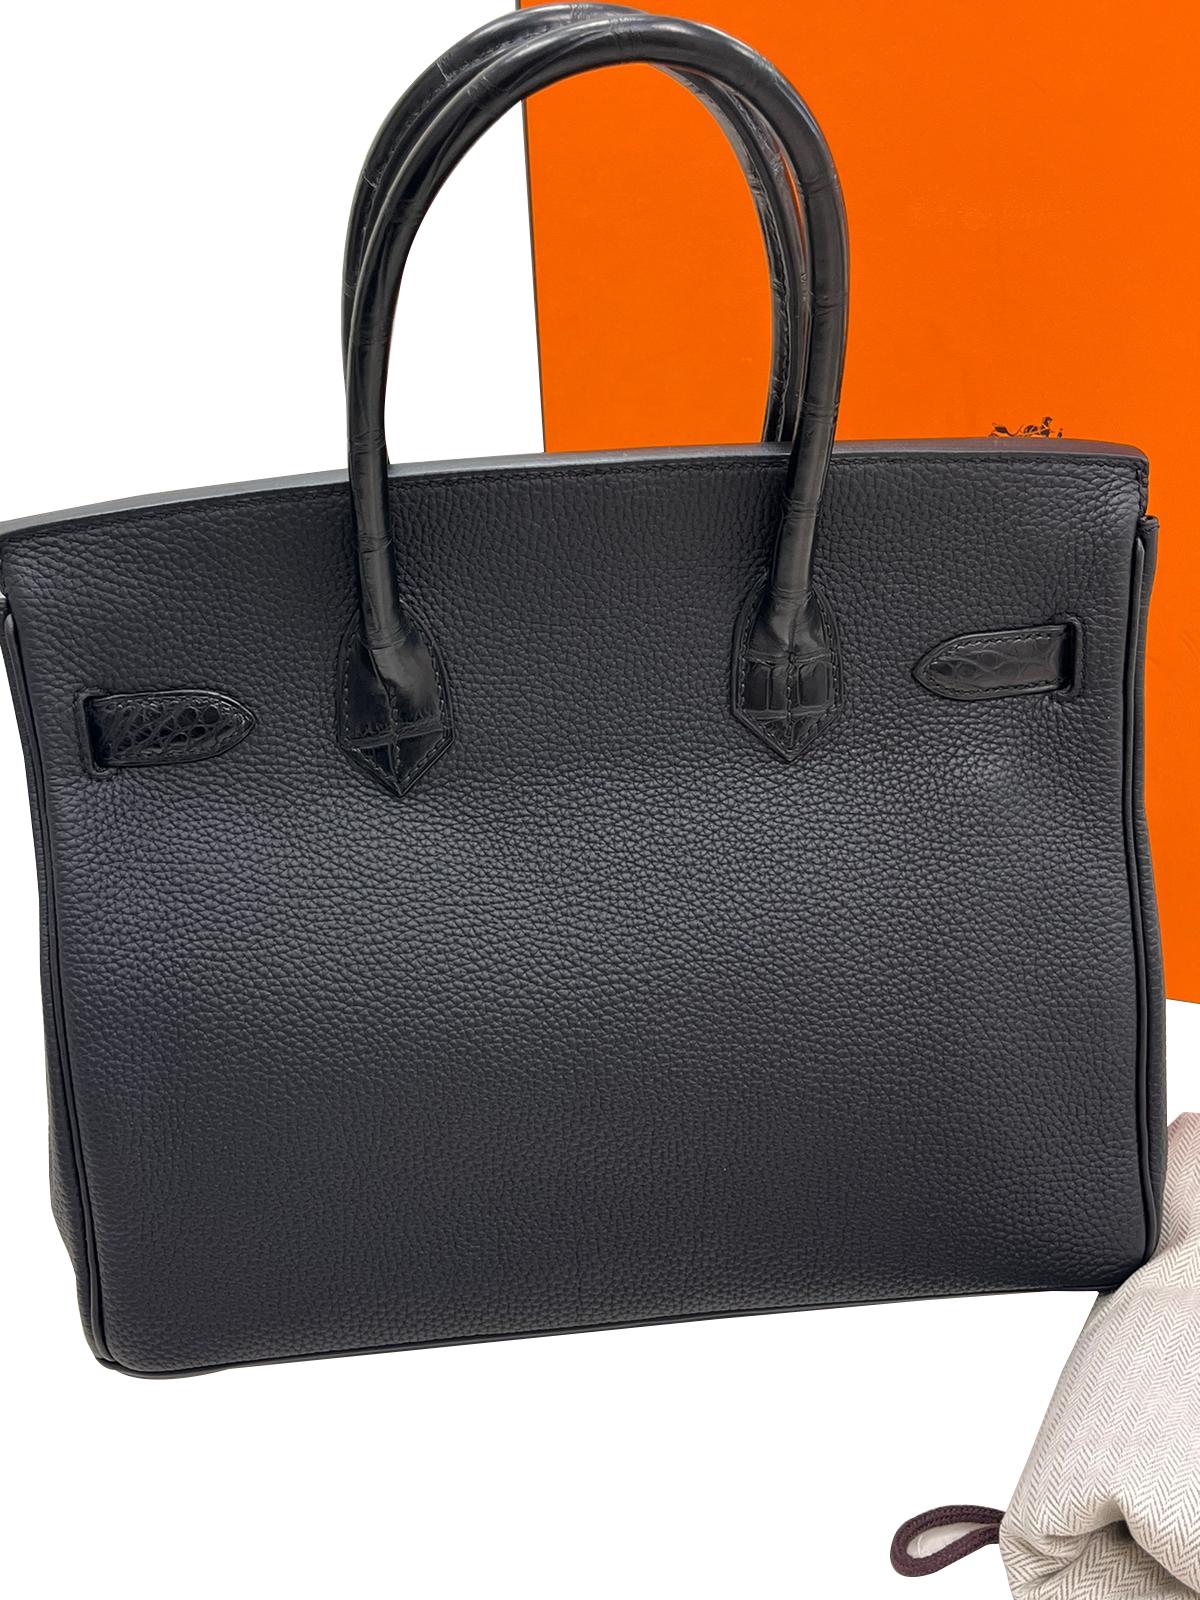 Hermès Birkin 30 Black Matte Alligator and Togo Touch Rose Gold Hardware For Sale 15